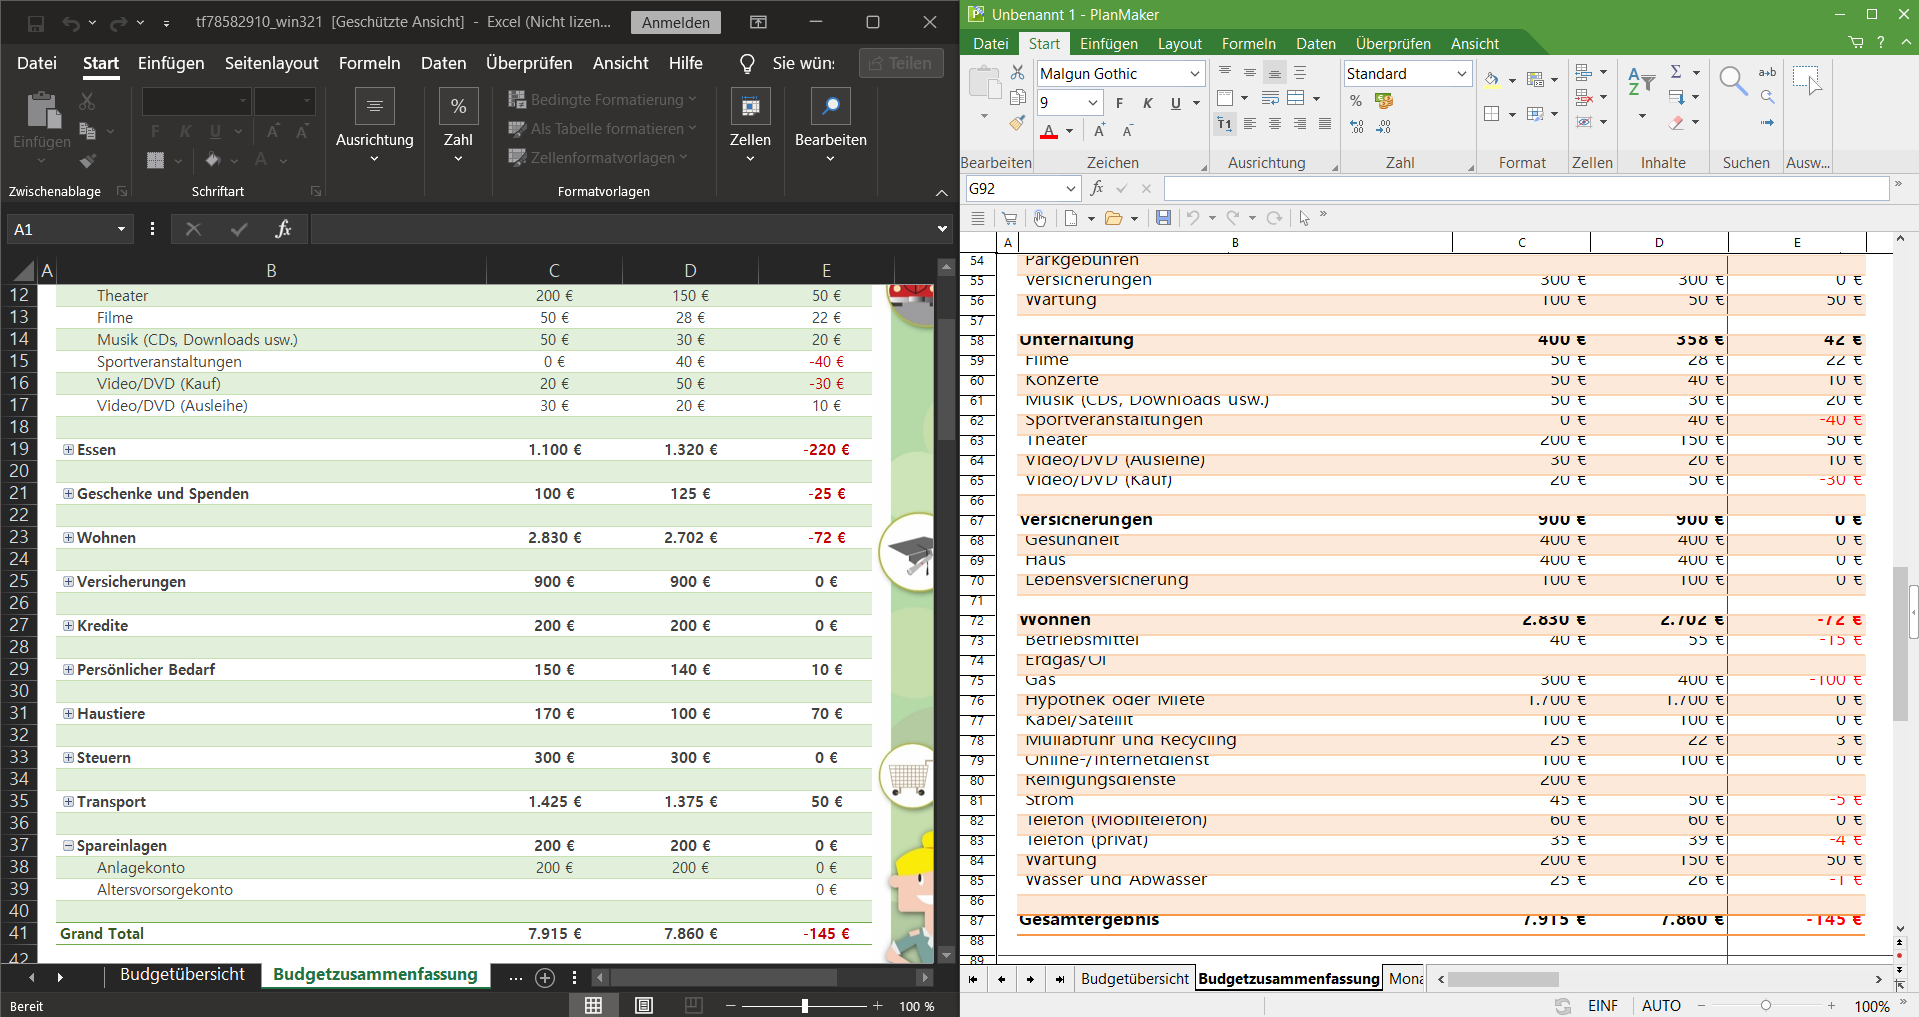 Konvertierungsfehler: Zwischen Excel und PlanMaker treten gravierende Unterschiede auf.